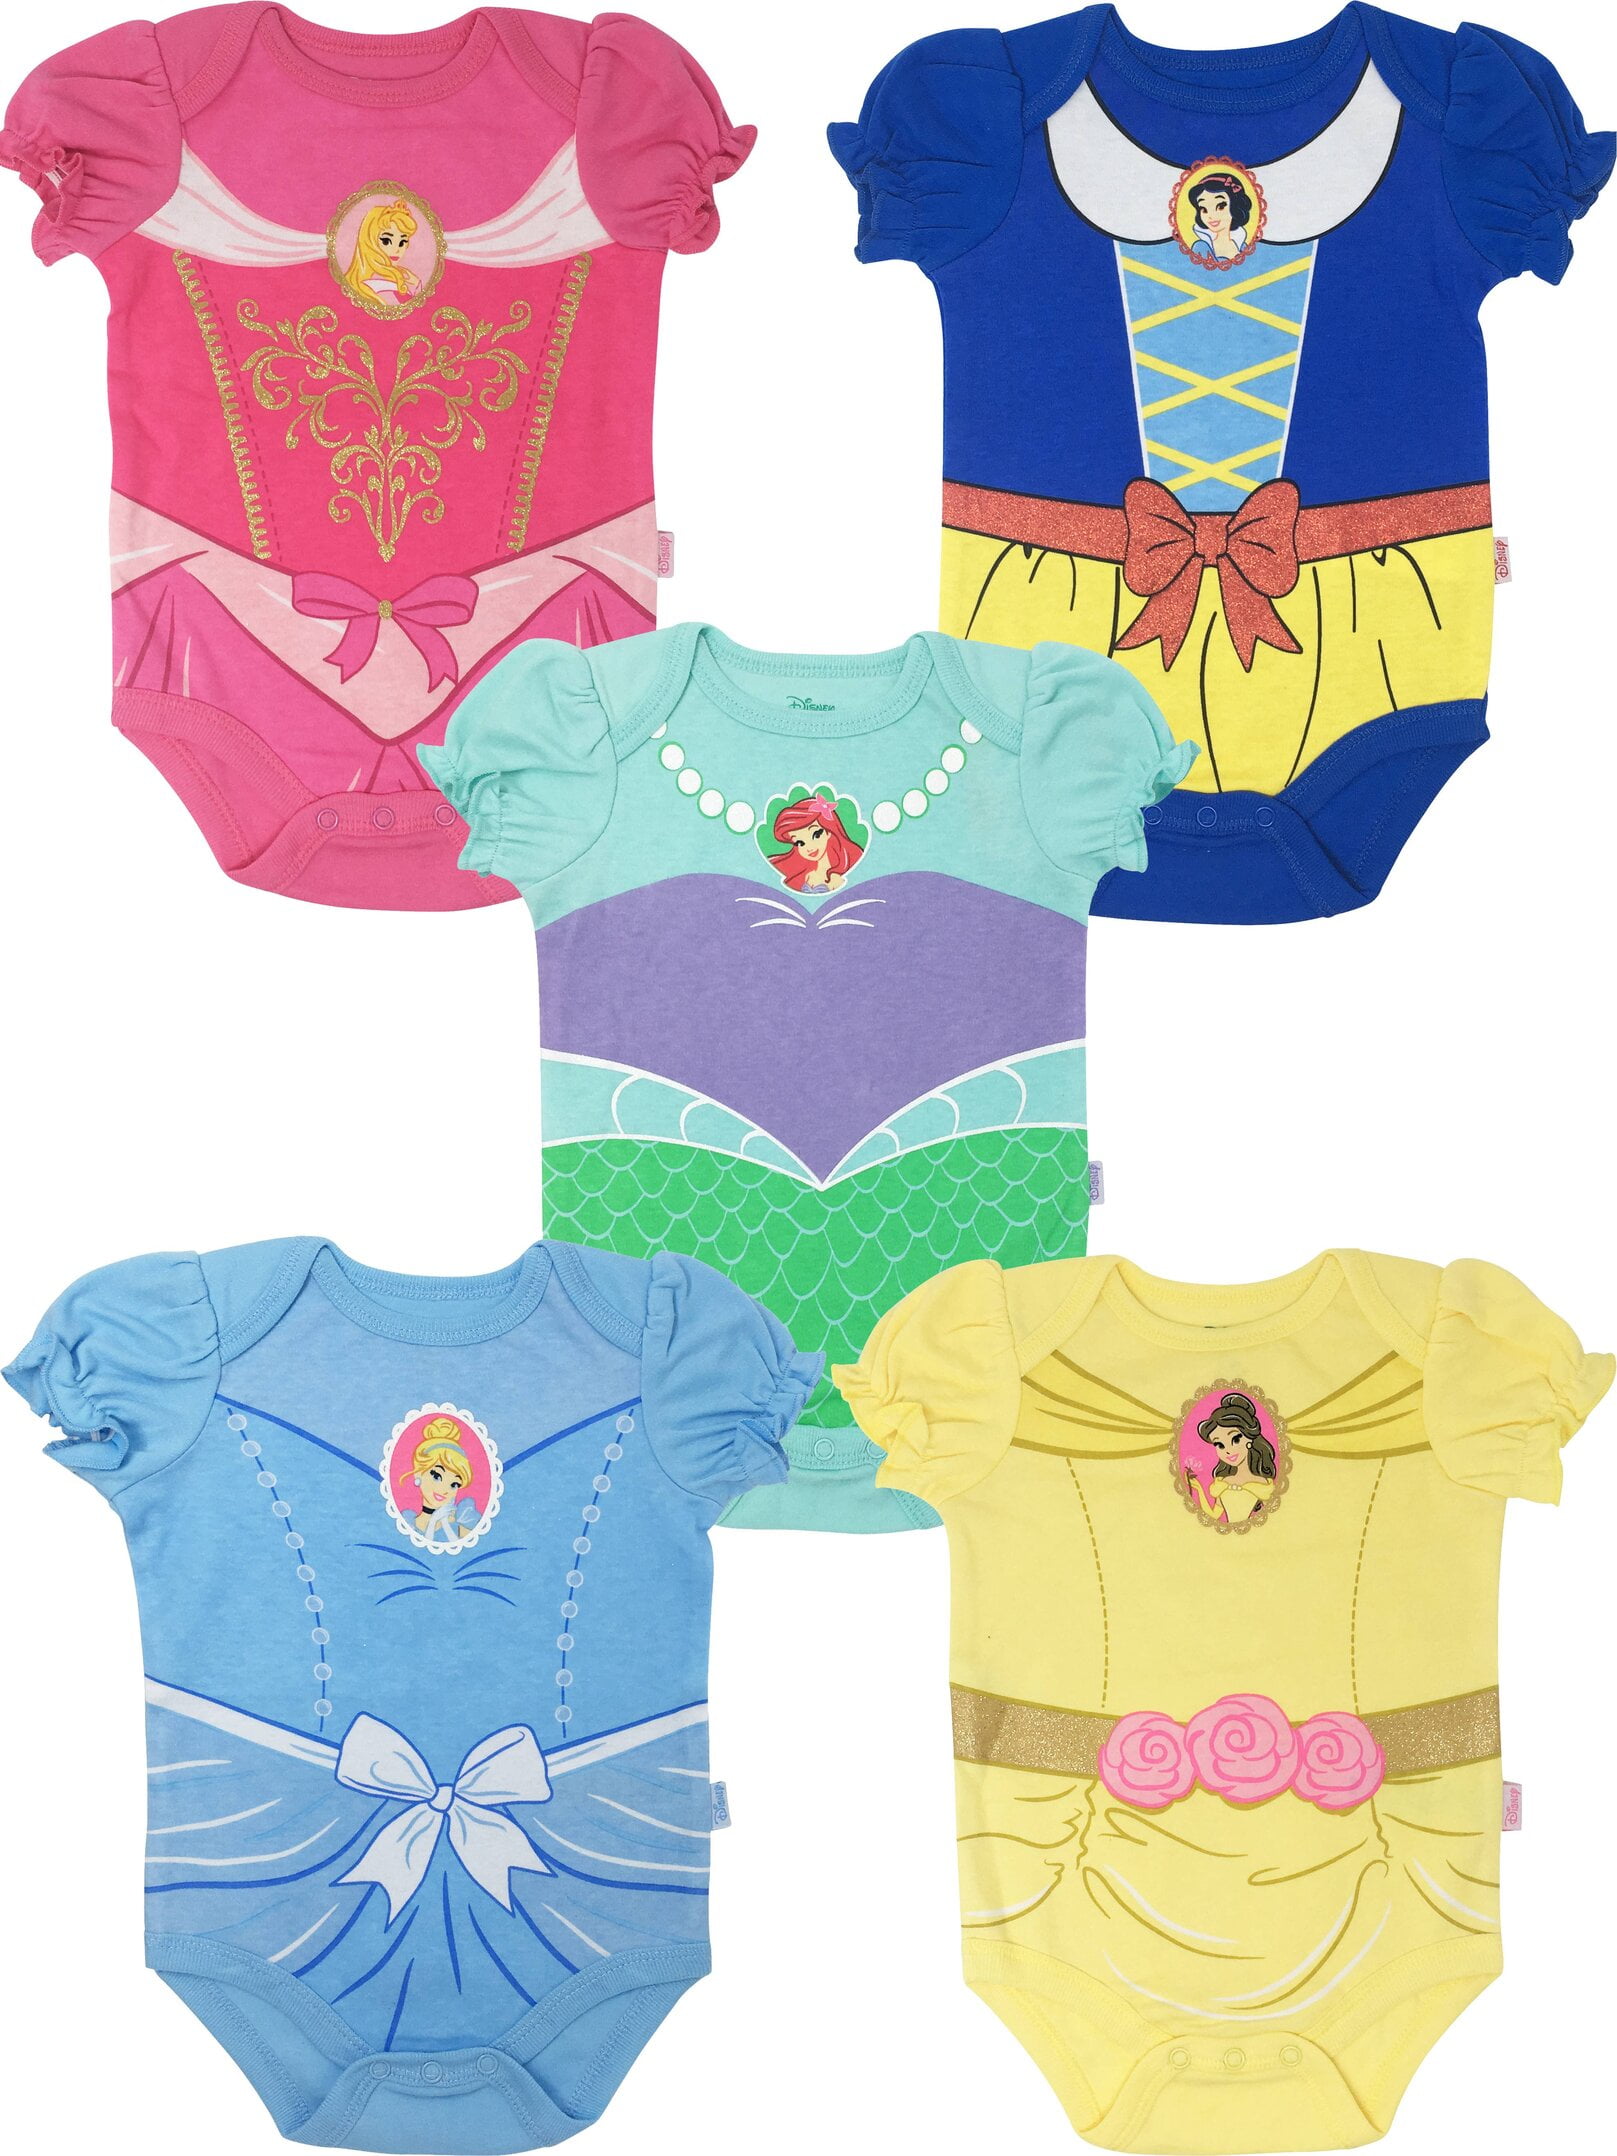 Disney Store Princess Belle Beauty & the Beast Baby Girls T Shirt 18-24 Months 